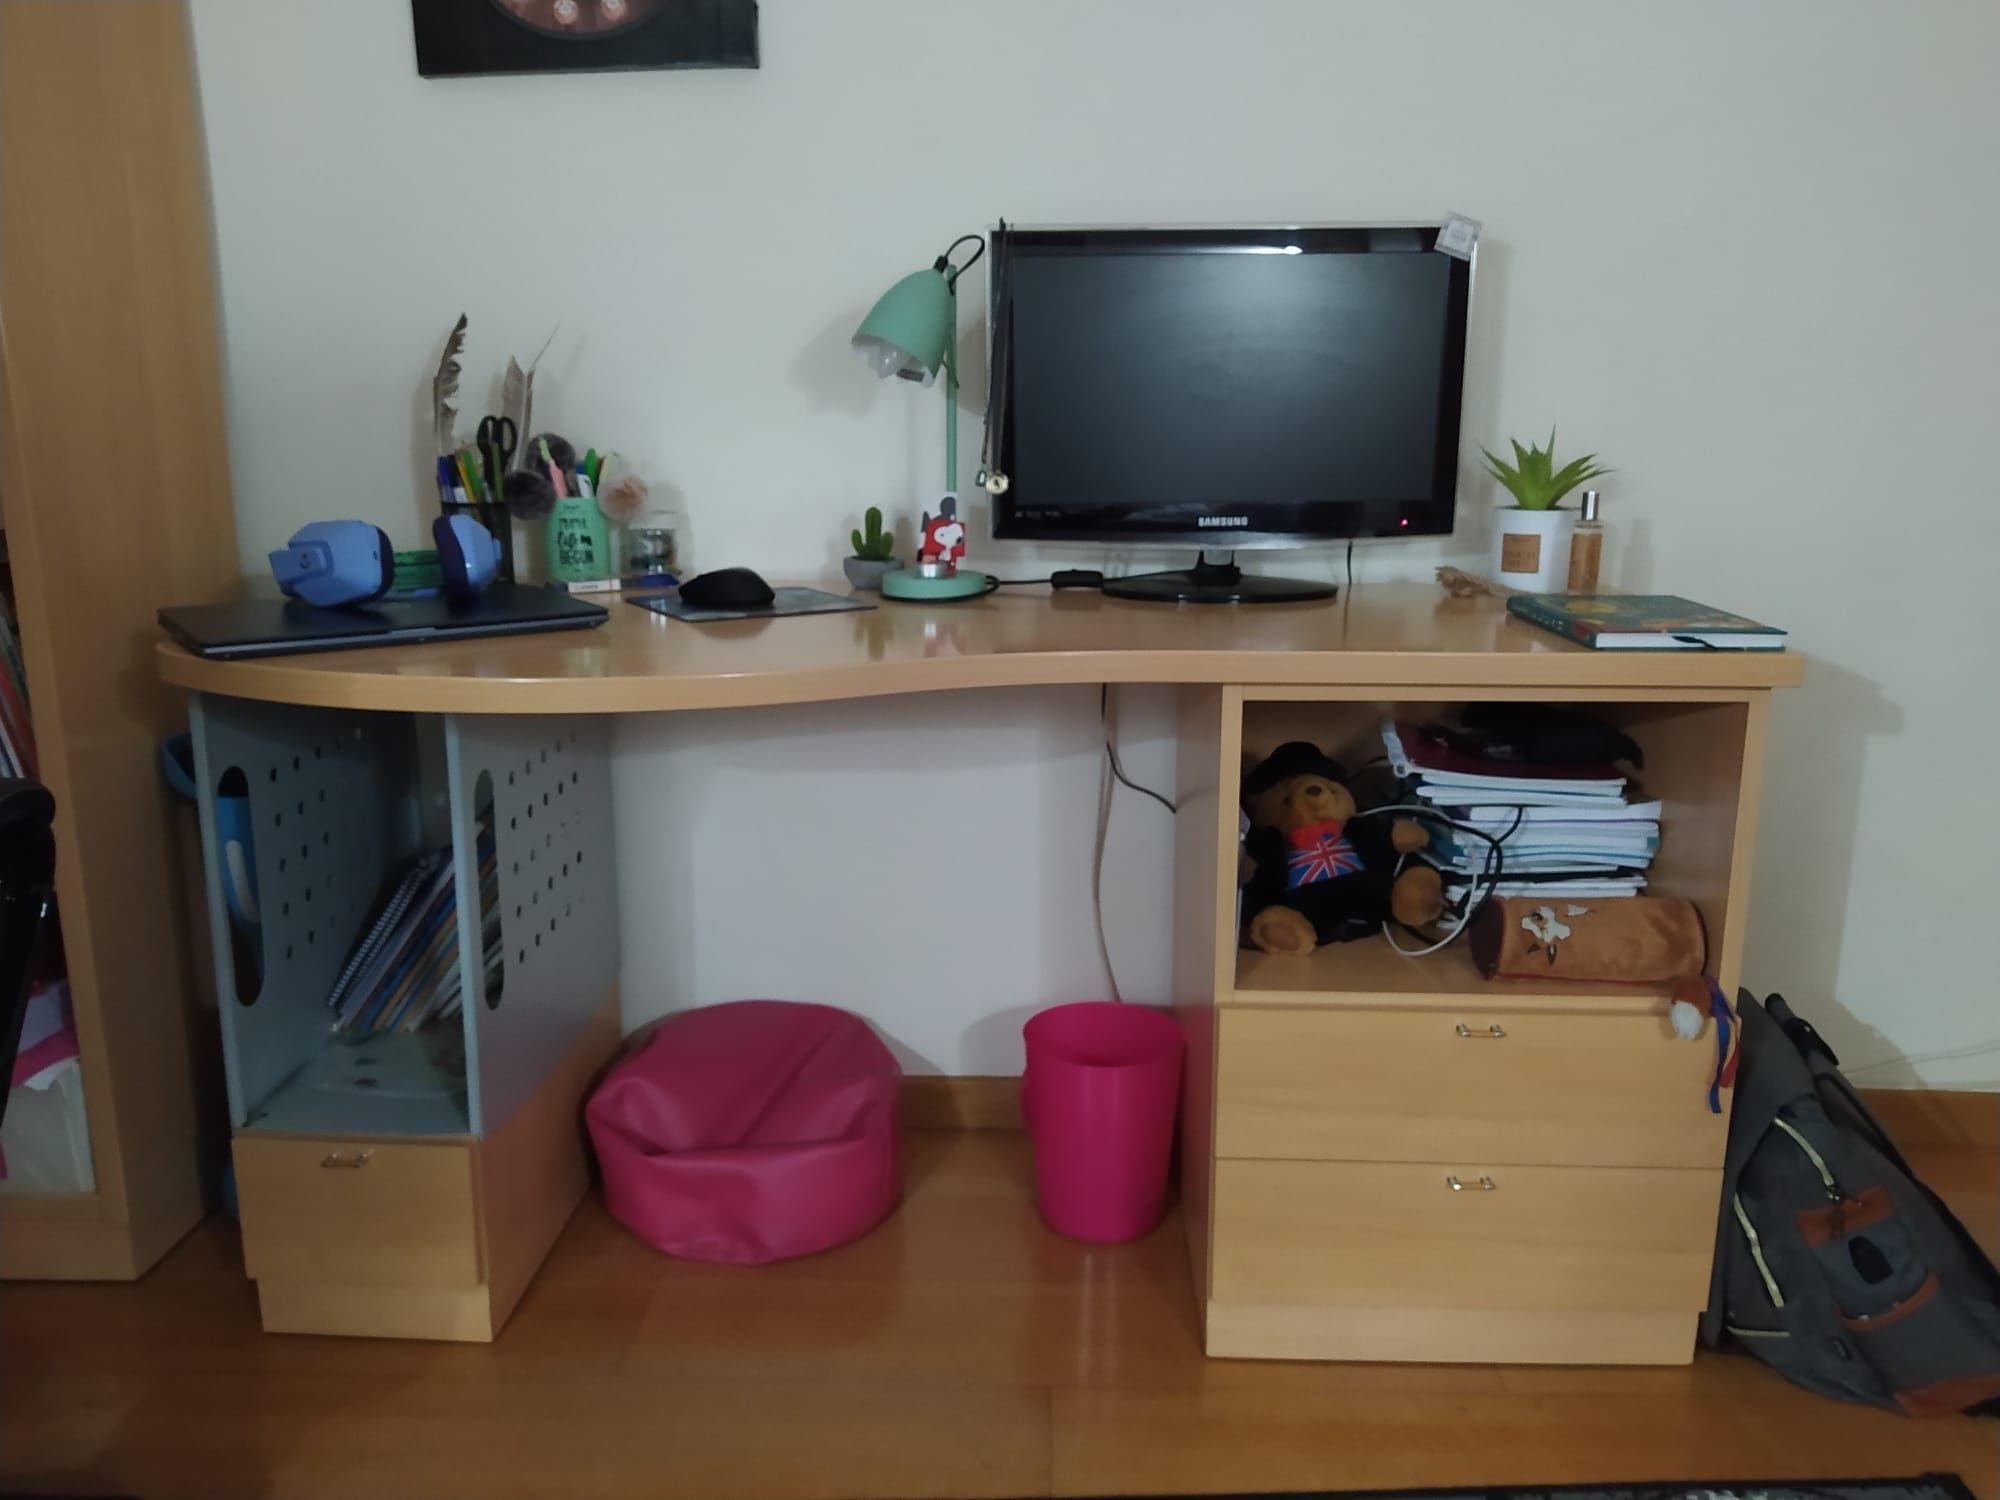 Cama + secretária + estantes